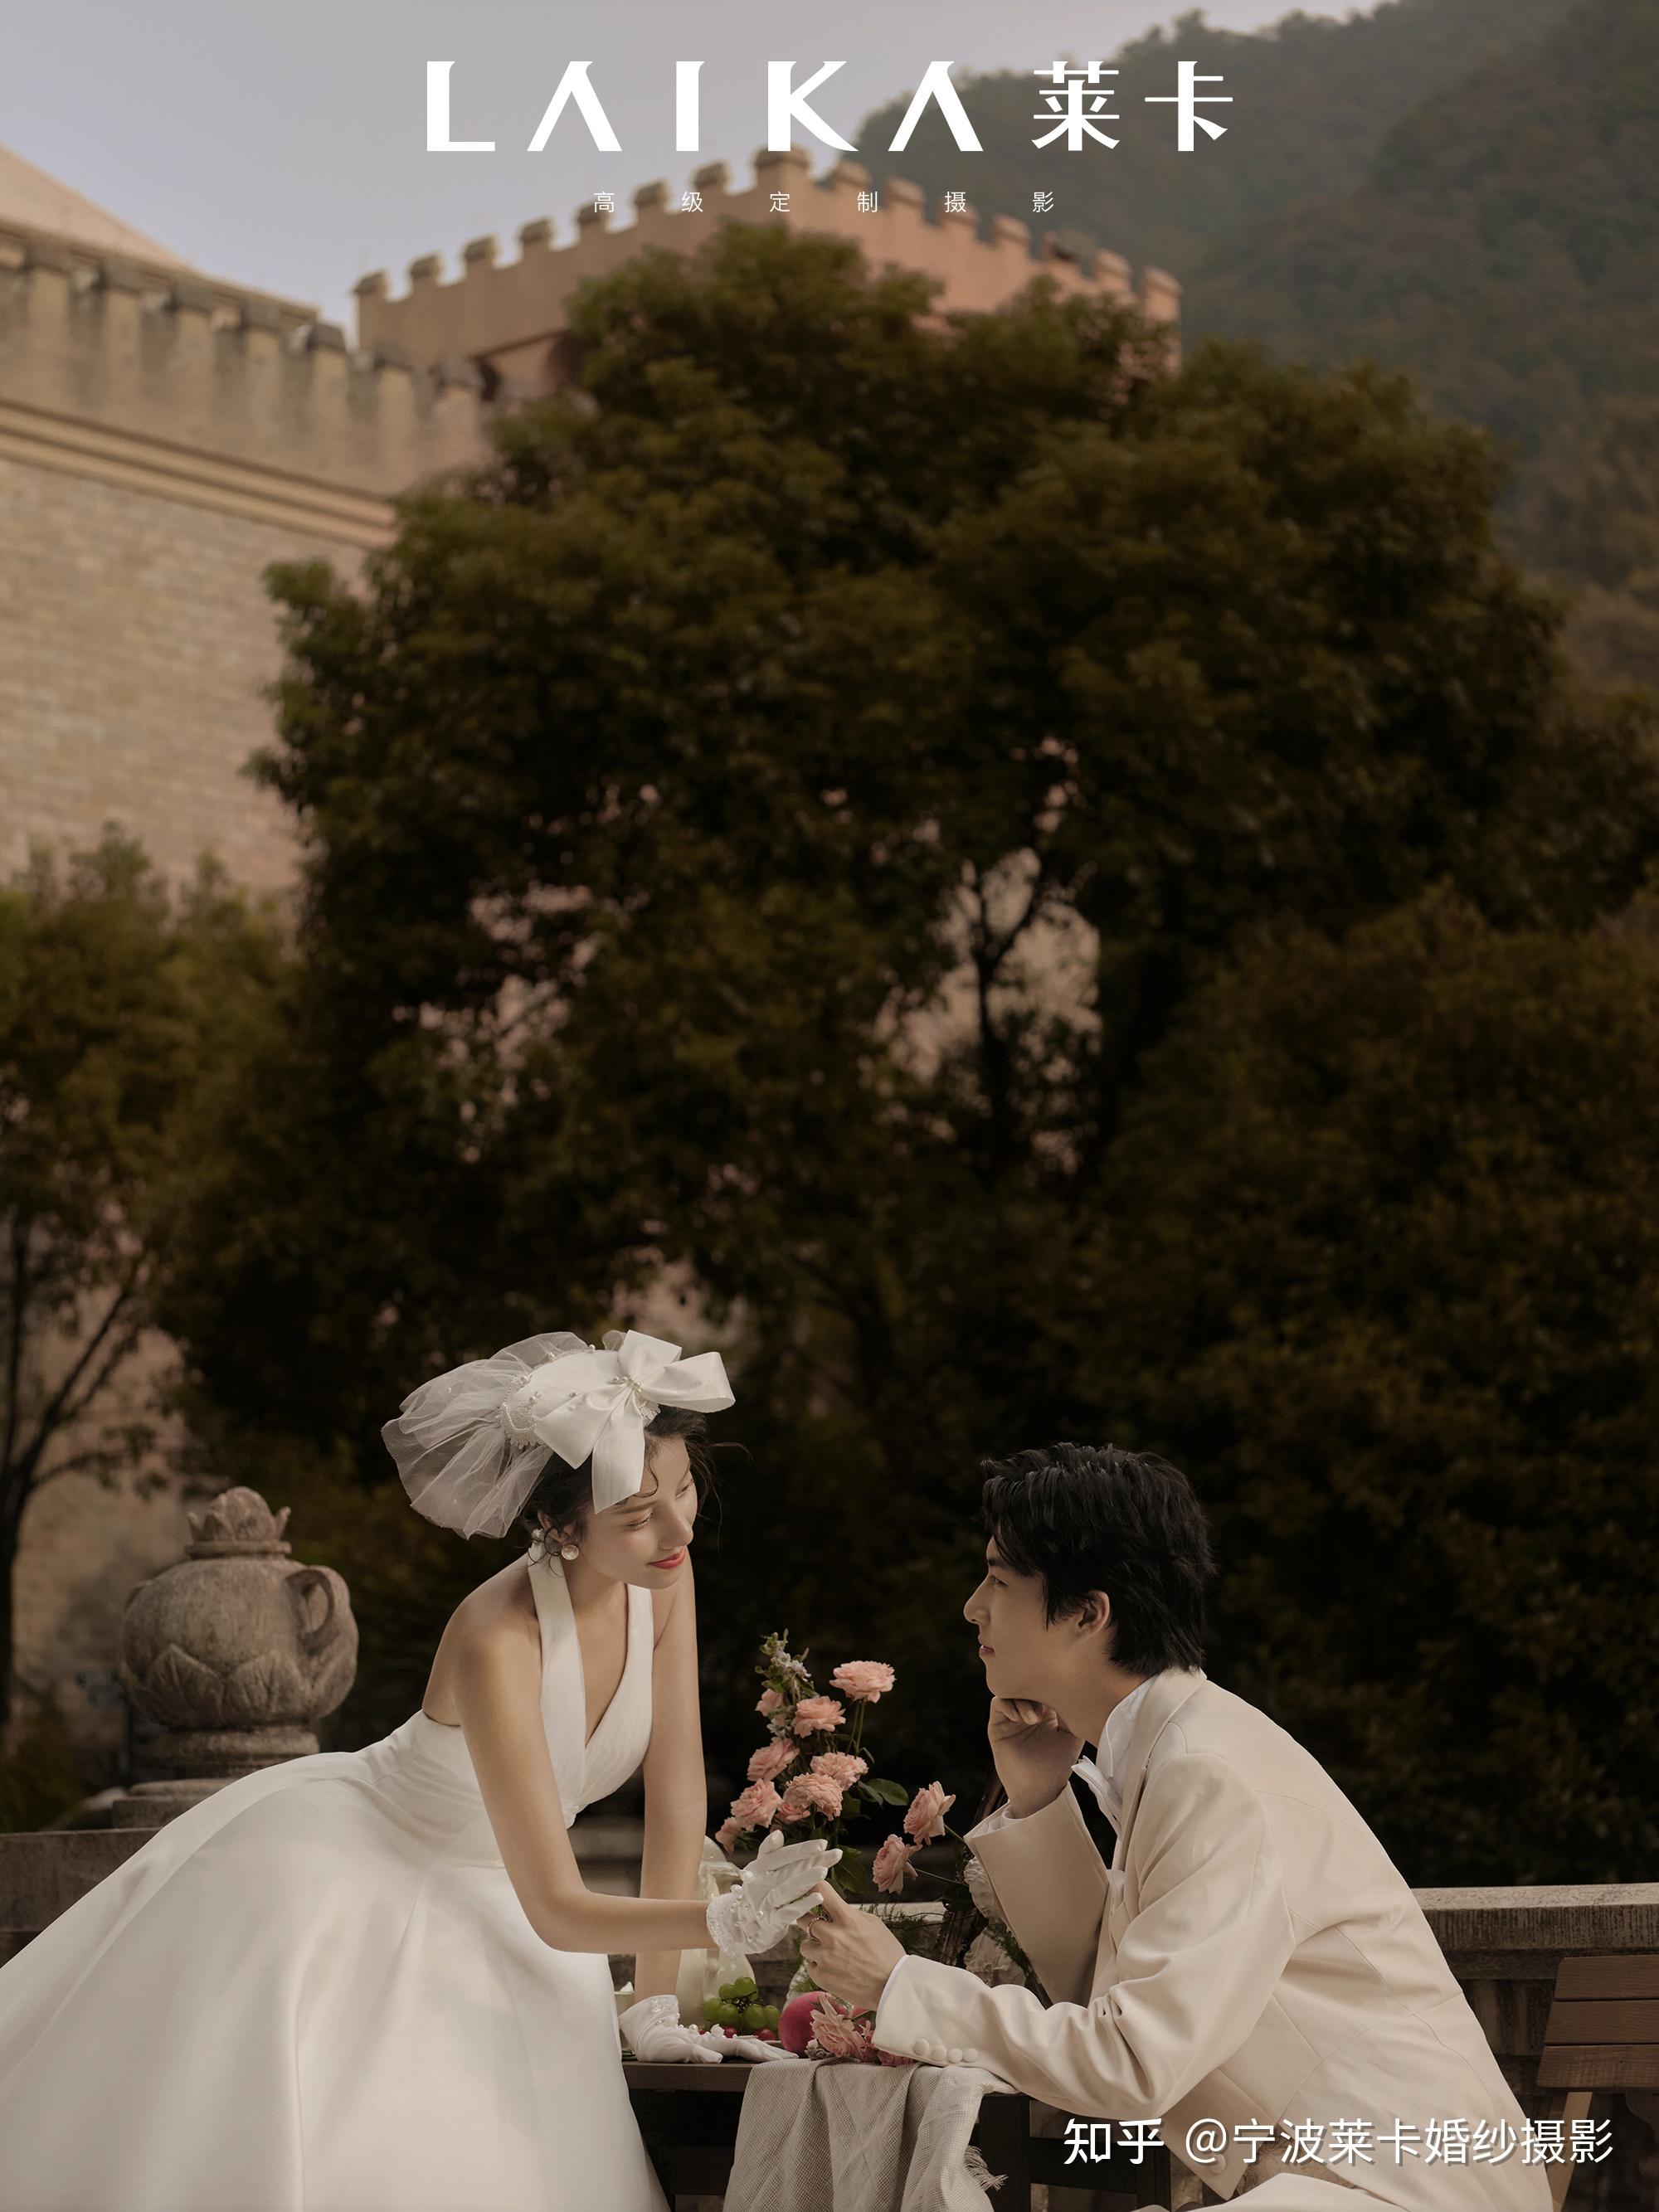 浪漫法式婚纱照是必拍风格吗?